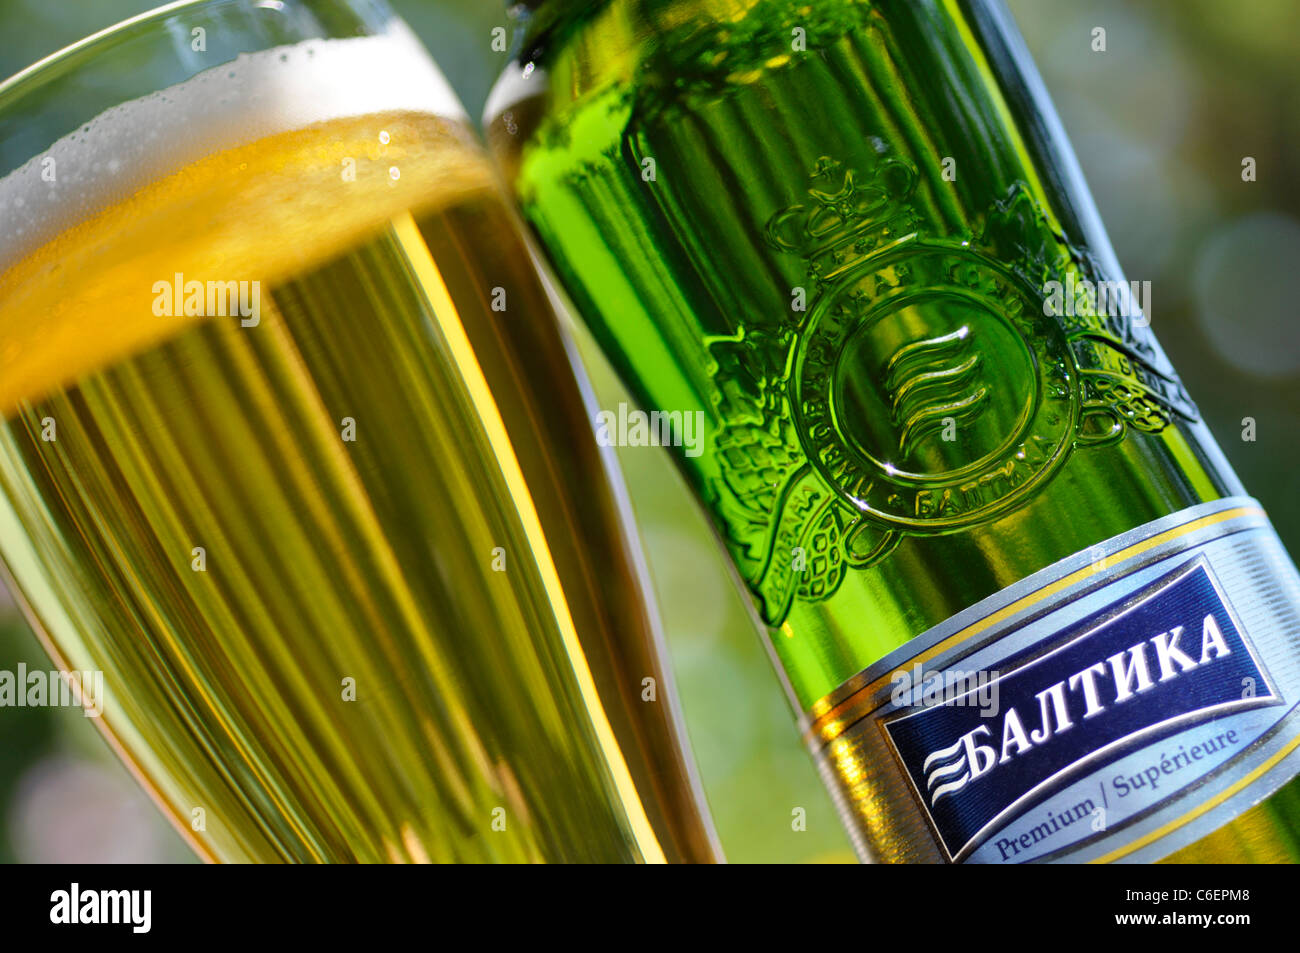 Vidrio y botellas de cerveza en Rusia / Lager, Baltika Foto de stock